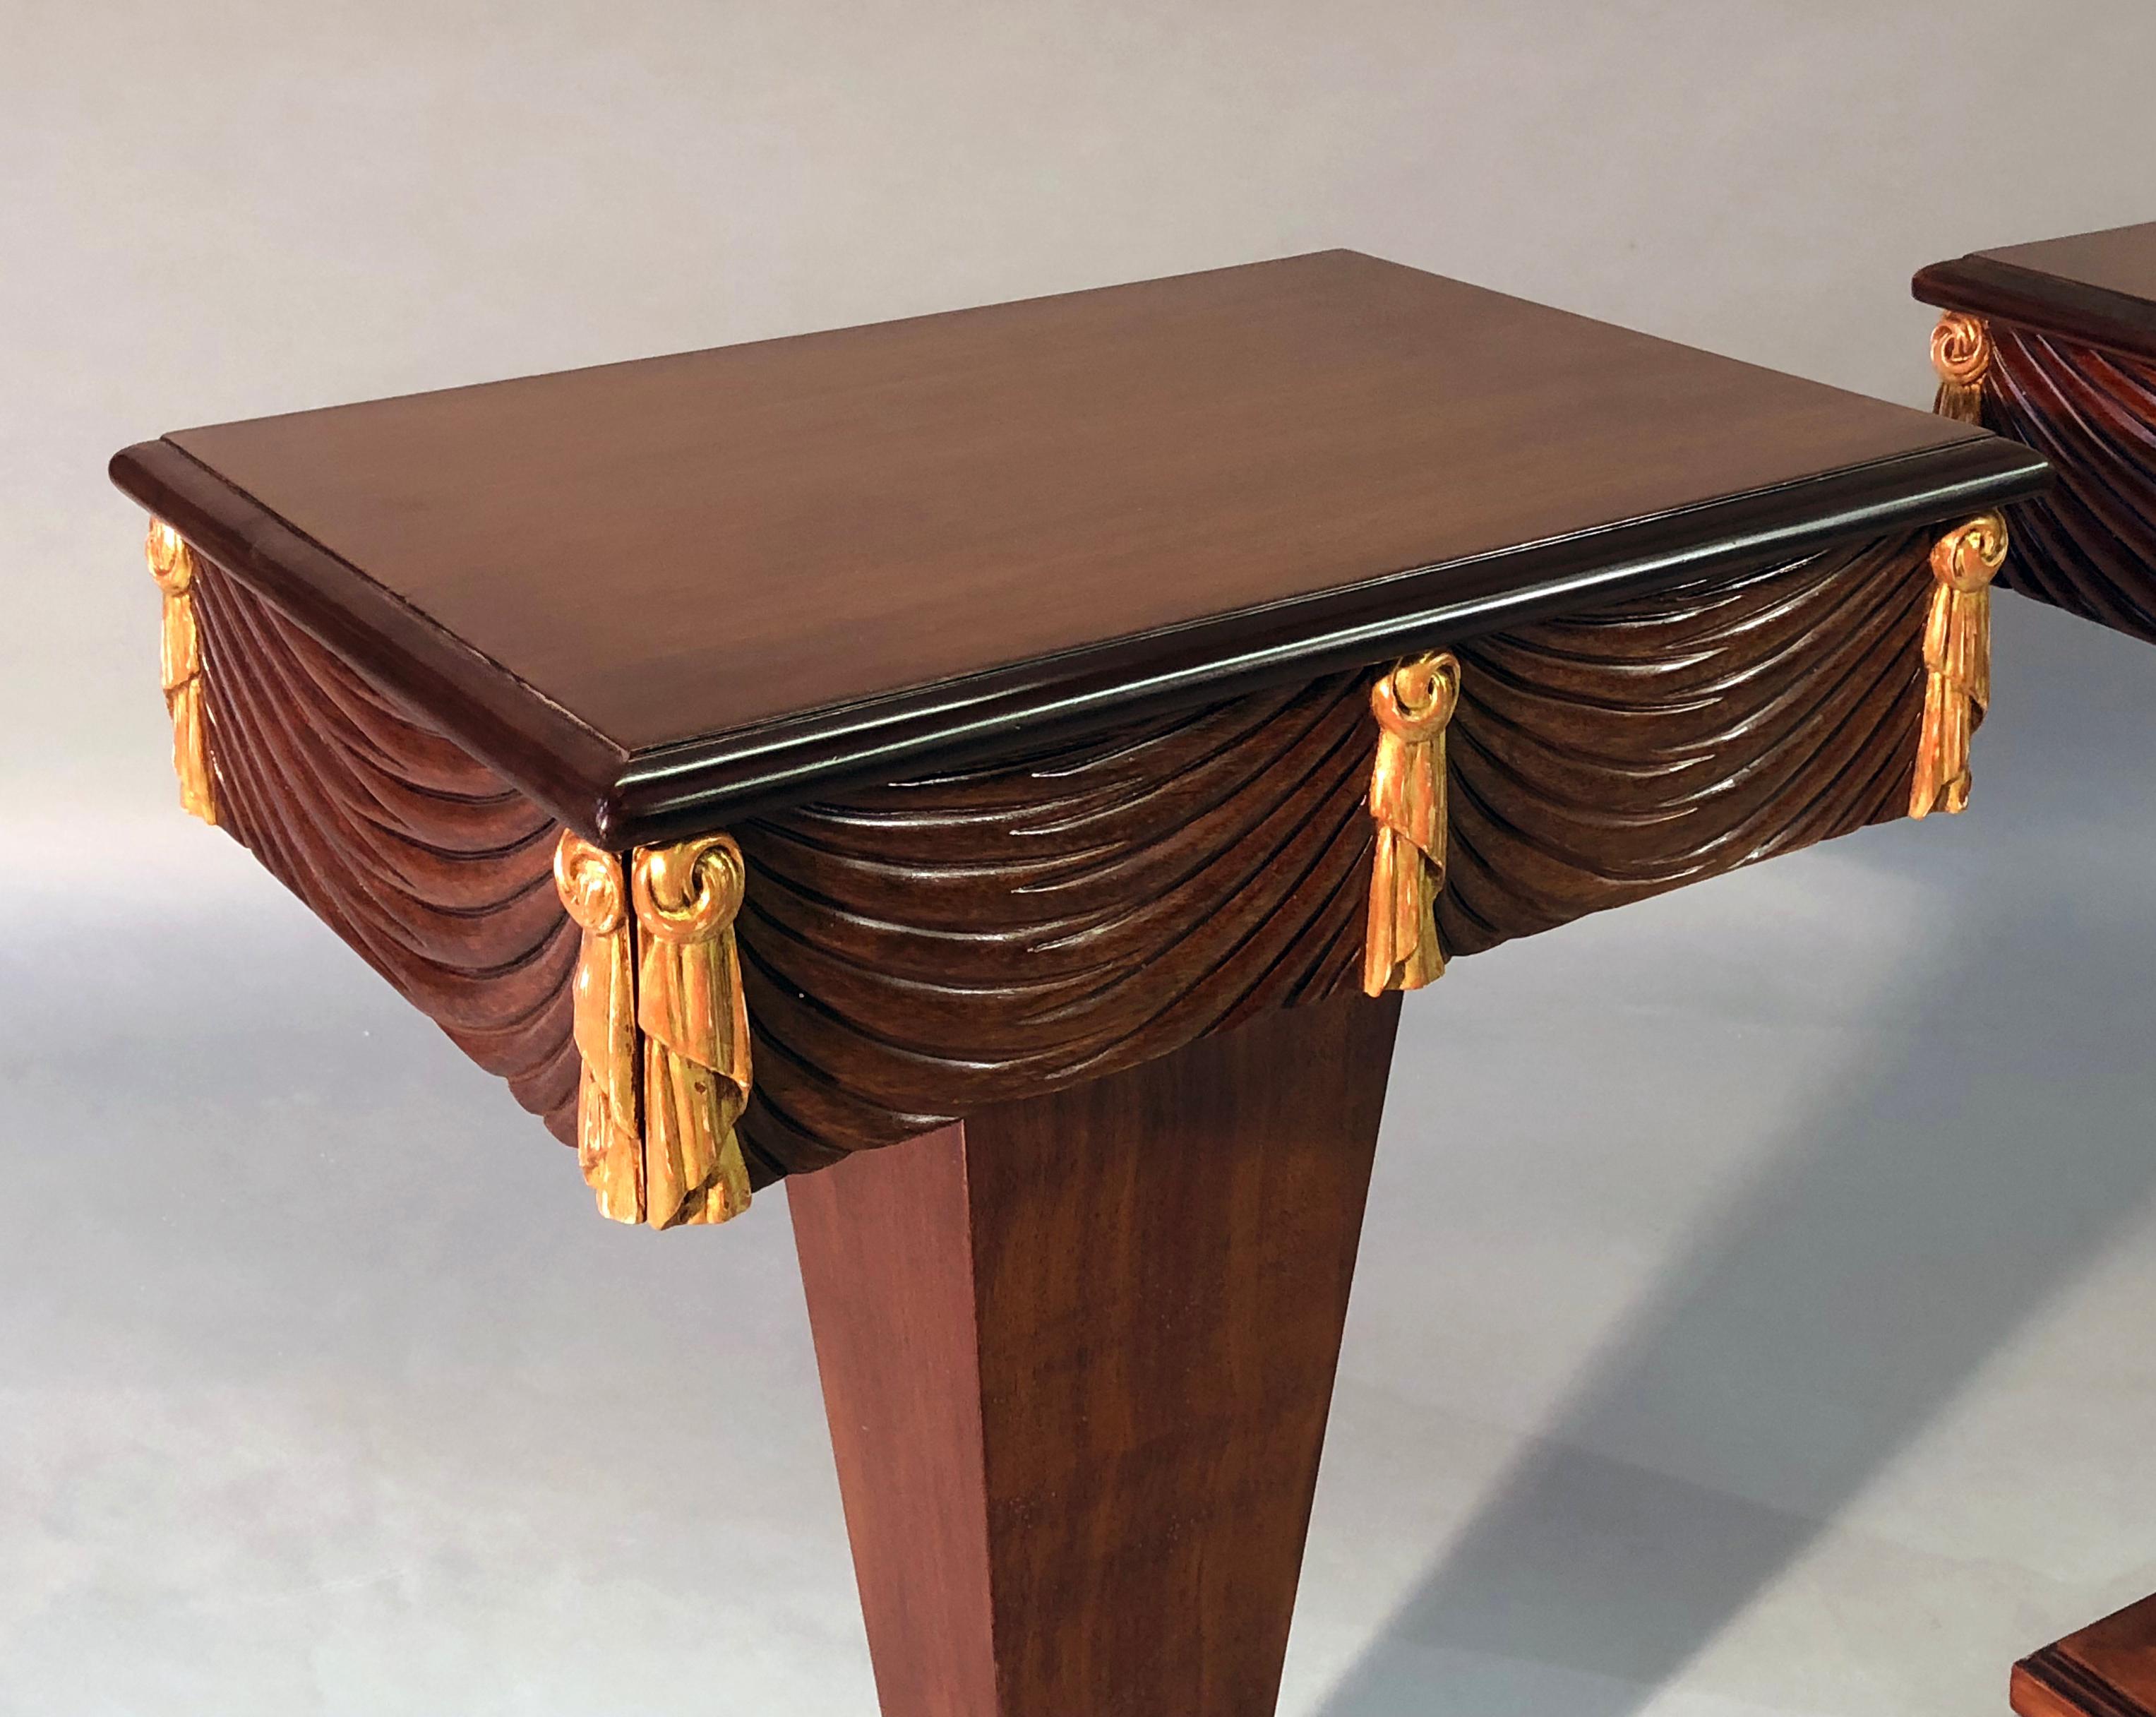 Paire de tables à piédestal à un seul tiroir, datant des années 1940, en acajou et dorure à la feuille, chacune avec un plateau rectangulaire au-dessus d'un tablier sculpté en forme de houppe avec une décoration de pompons en bois doré, le tout